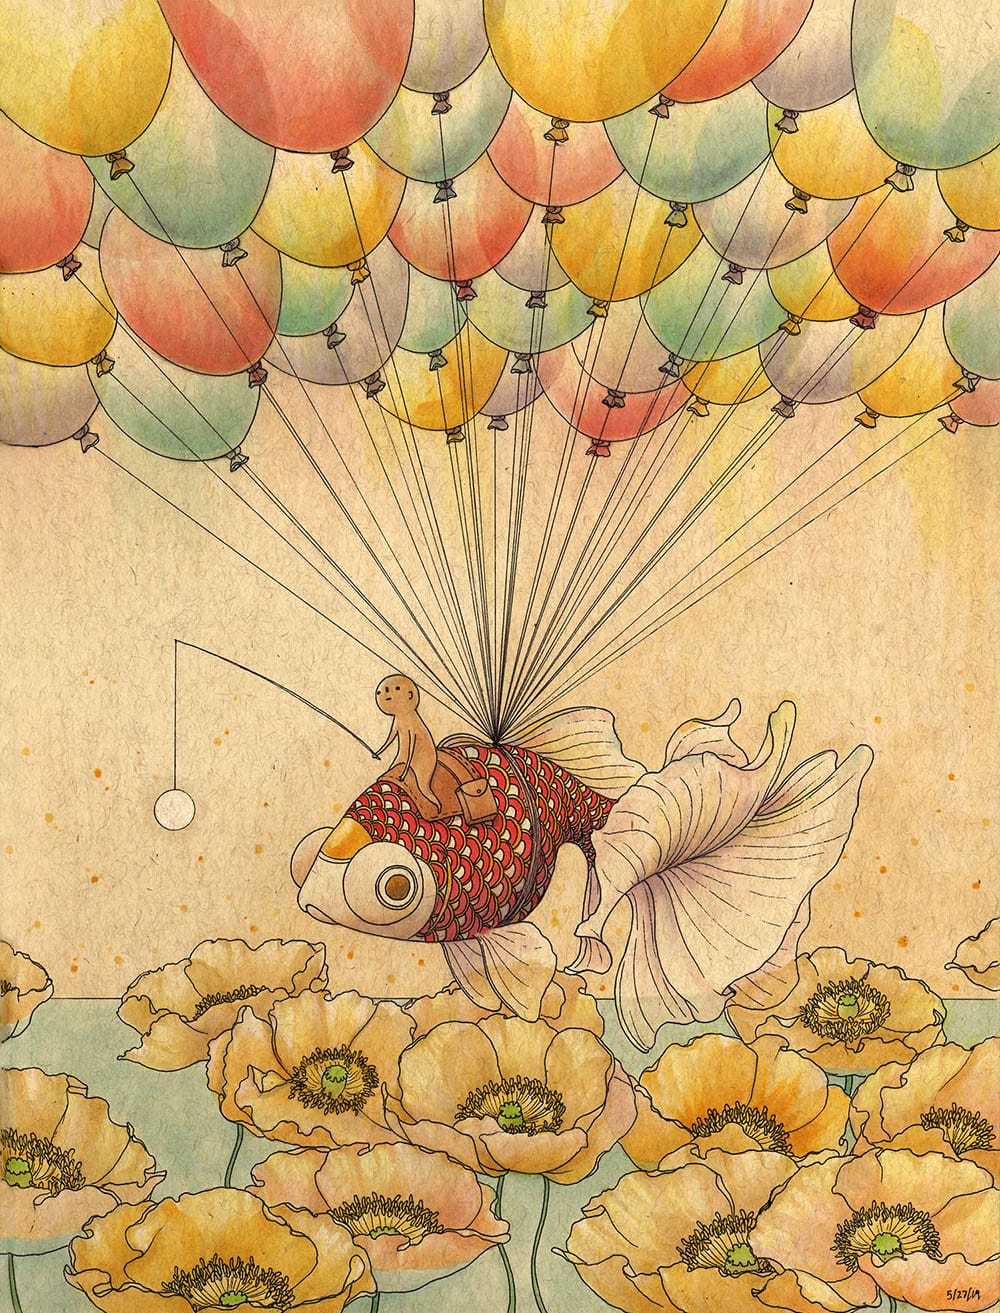 Illustration de Felicia Chiao, protagoniste sur un poisson volant grâce à des ballons.